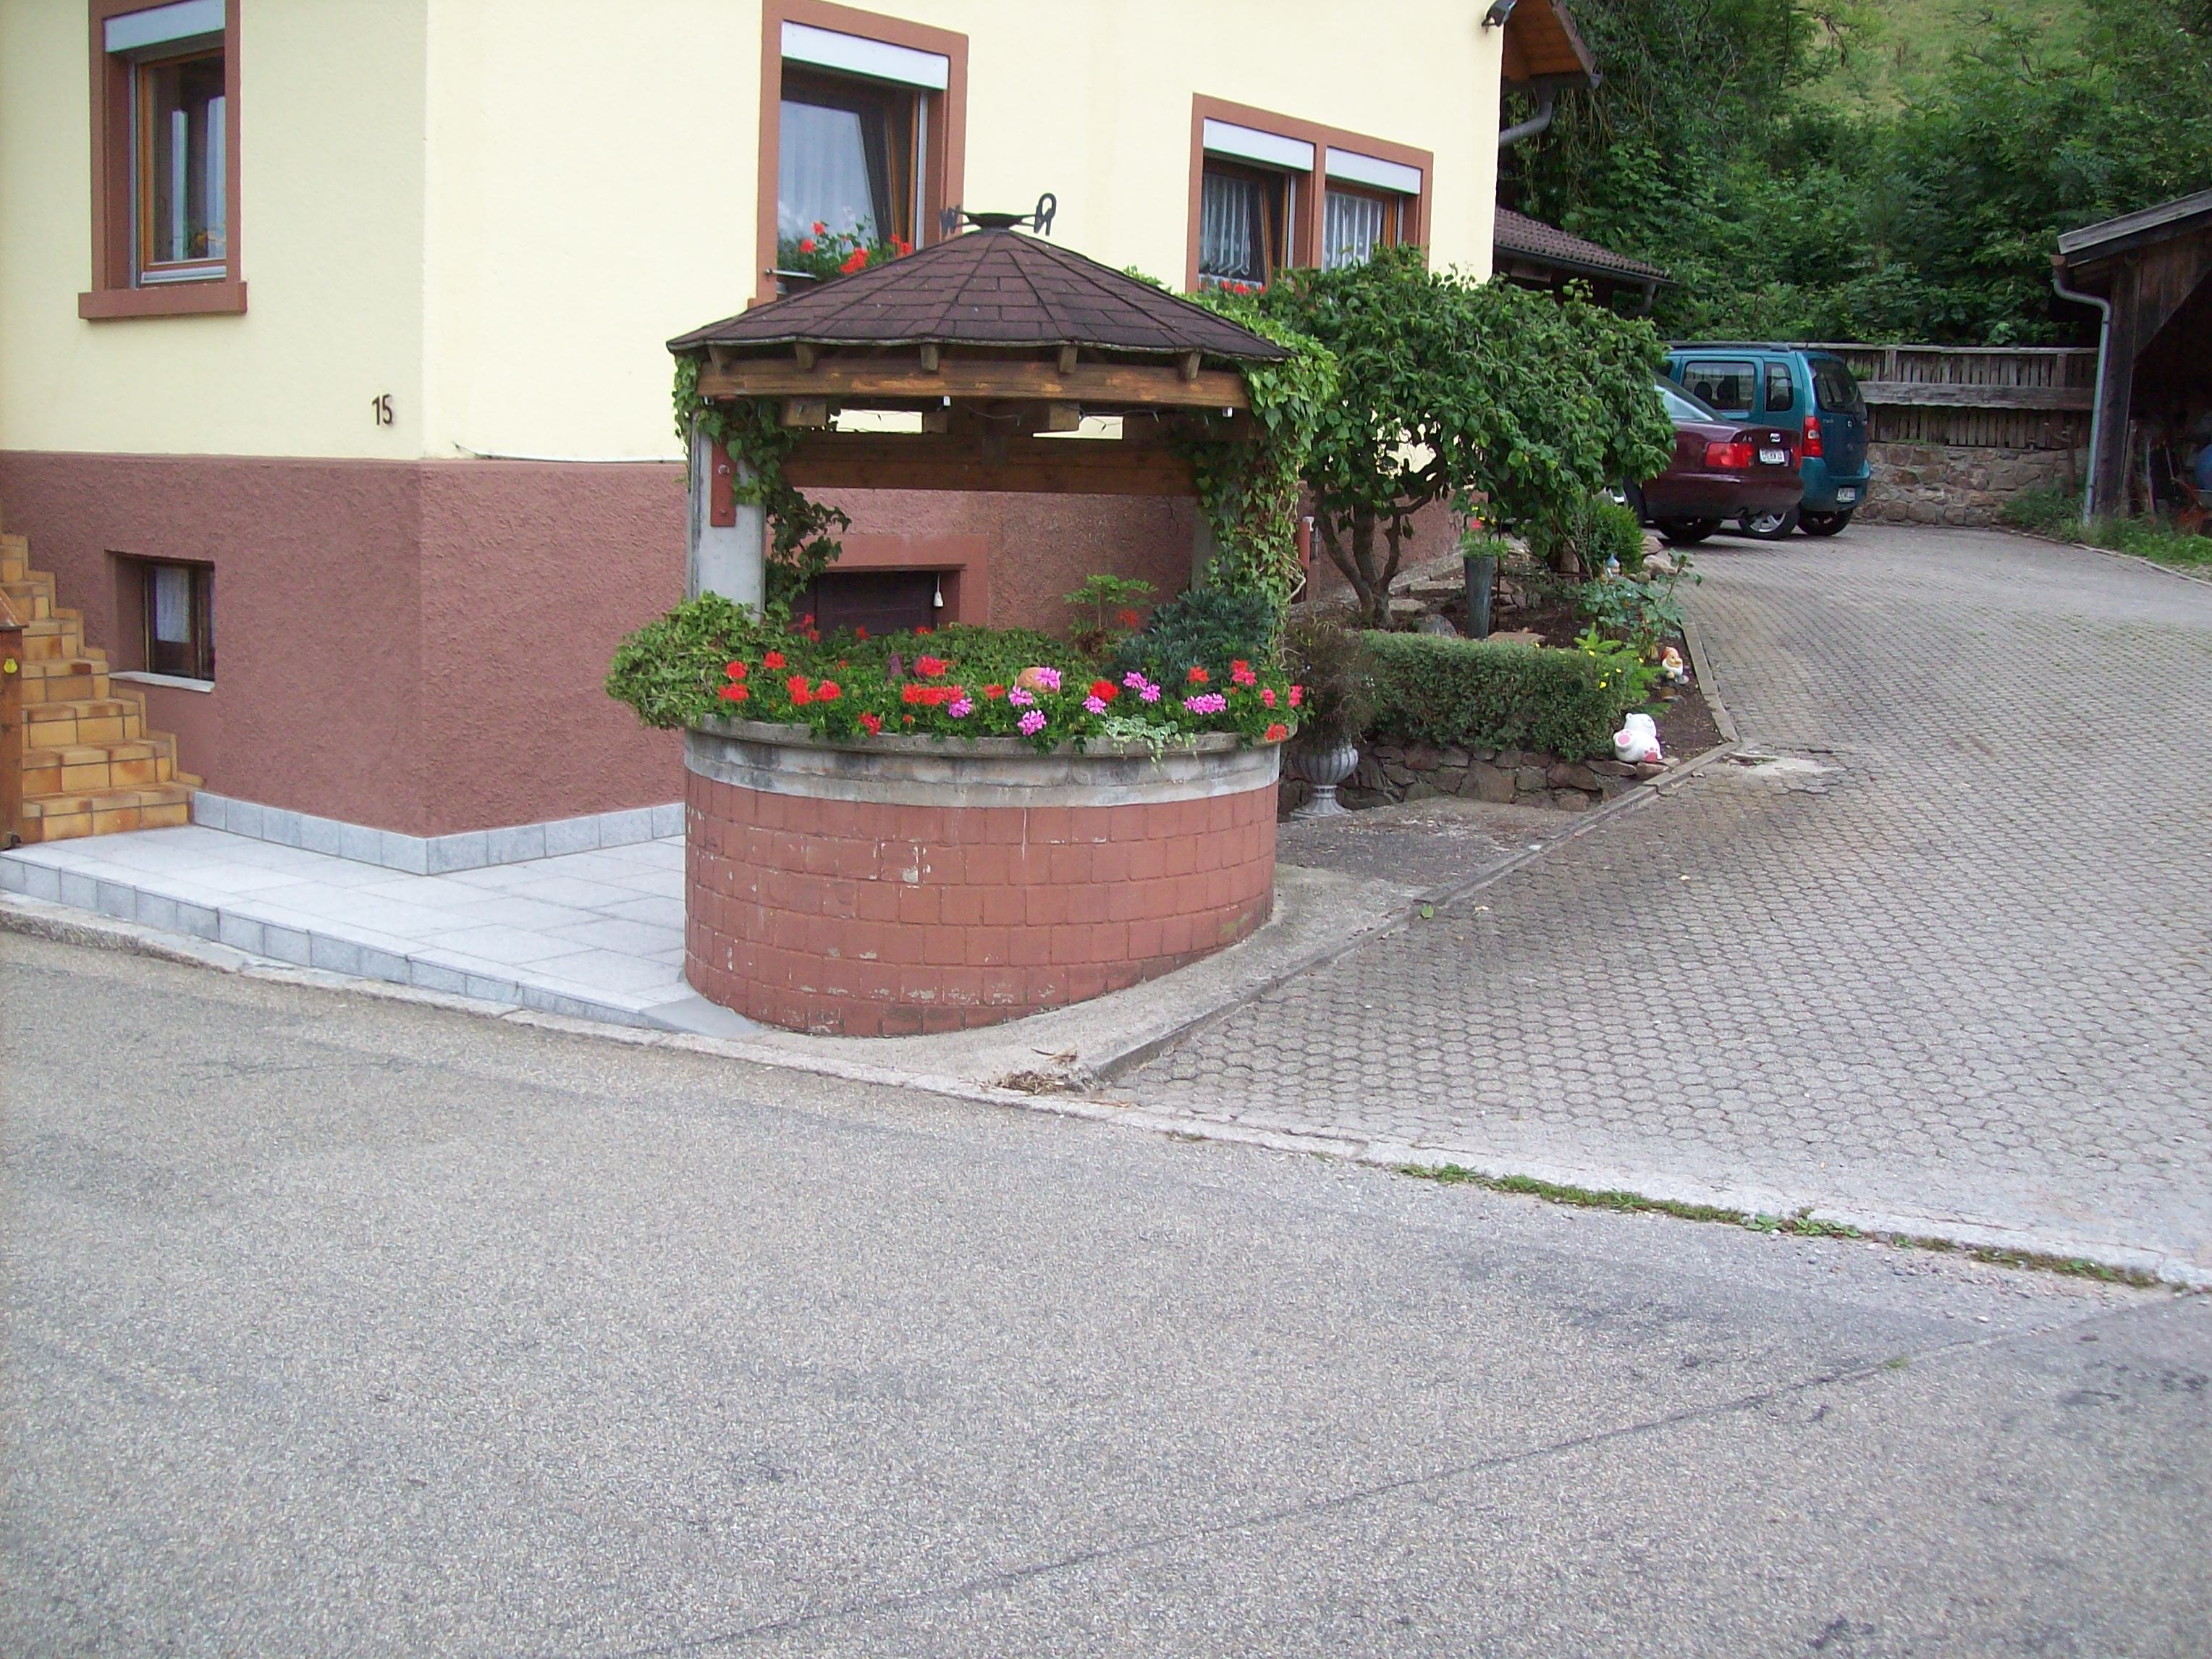 In unmittelbarer Nachbarschaft gelegen, ein mit Blumen geschmückter alter Brunnen